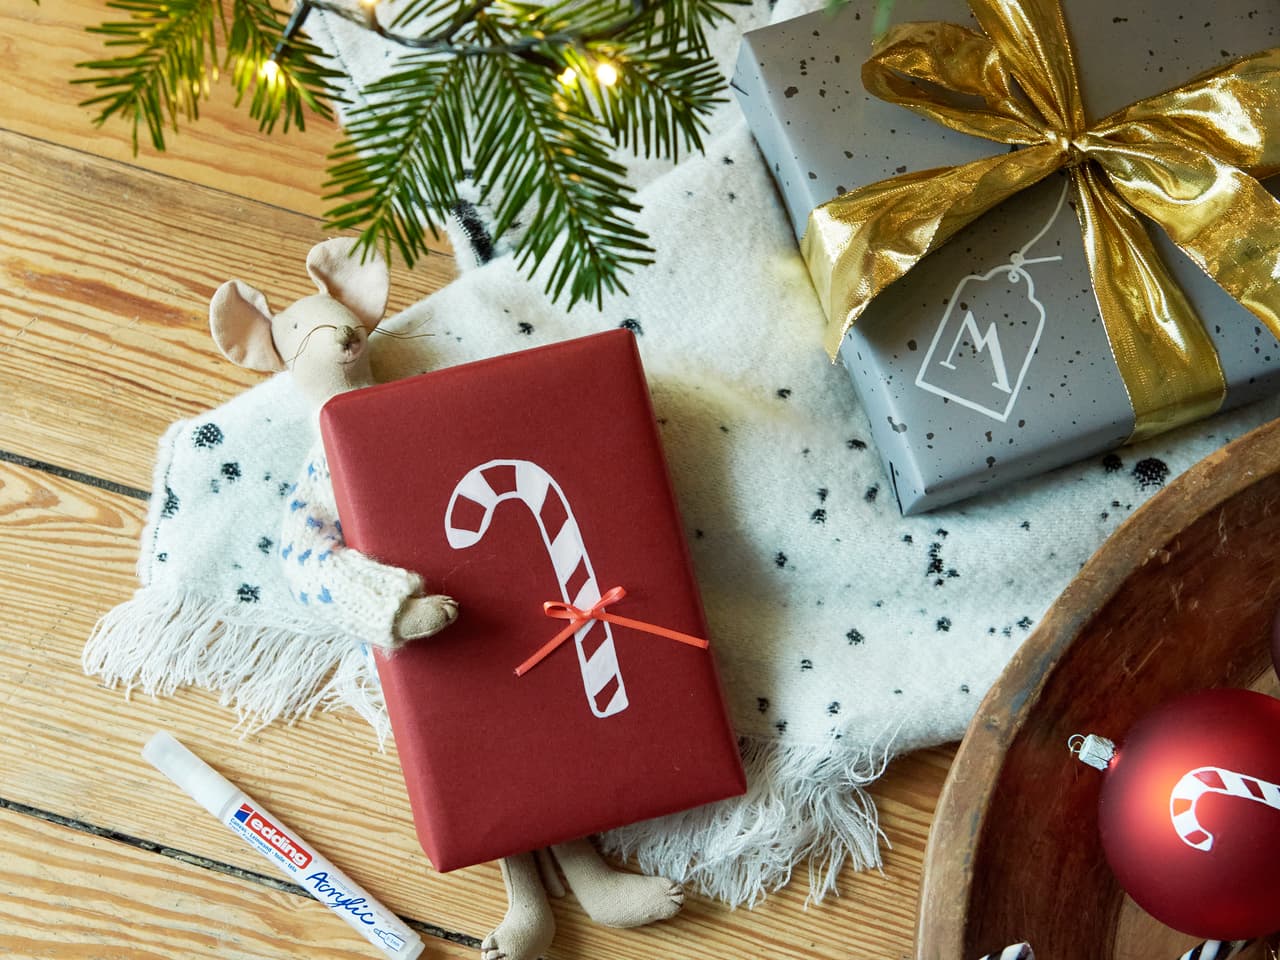 Festliche Weihnachtsgeschenke verpackt in elegantem Papier mit Schleifen, ein kuscheliger Schal, saisonale Dekorationen, hervorgehoben durch edding 5100 Acrylmarker-Medium-Designs, und ein Hauch von Grün auf einem Holztisch, der die Wärme einfängt.